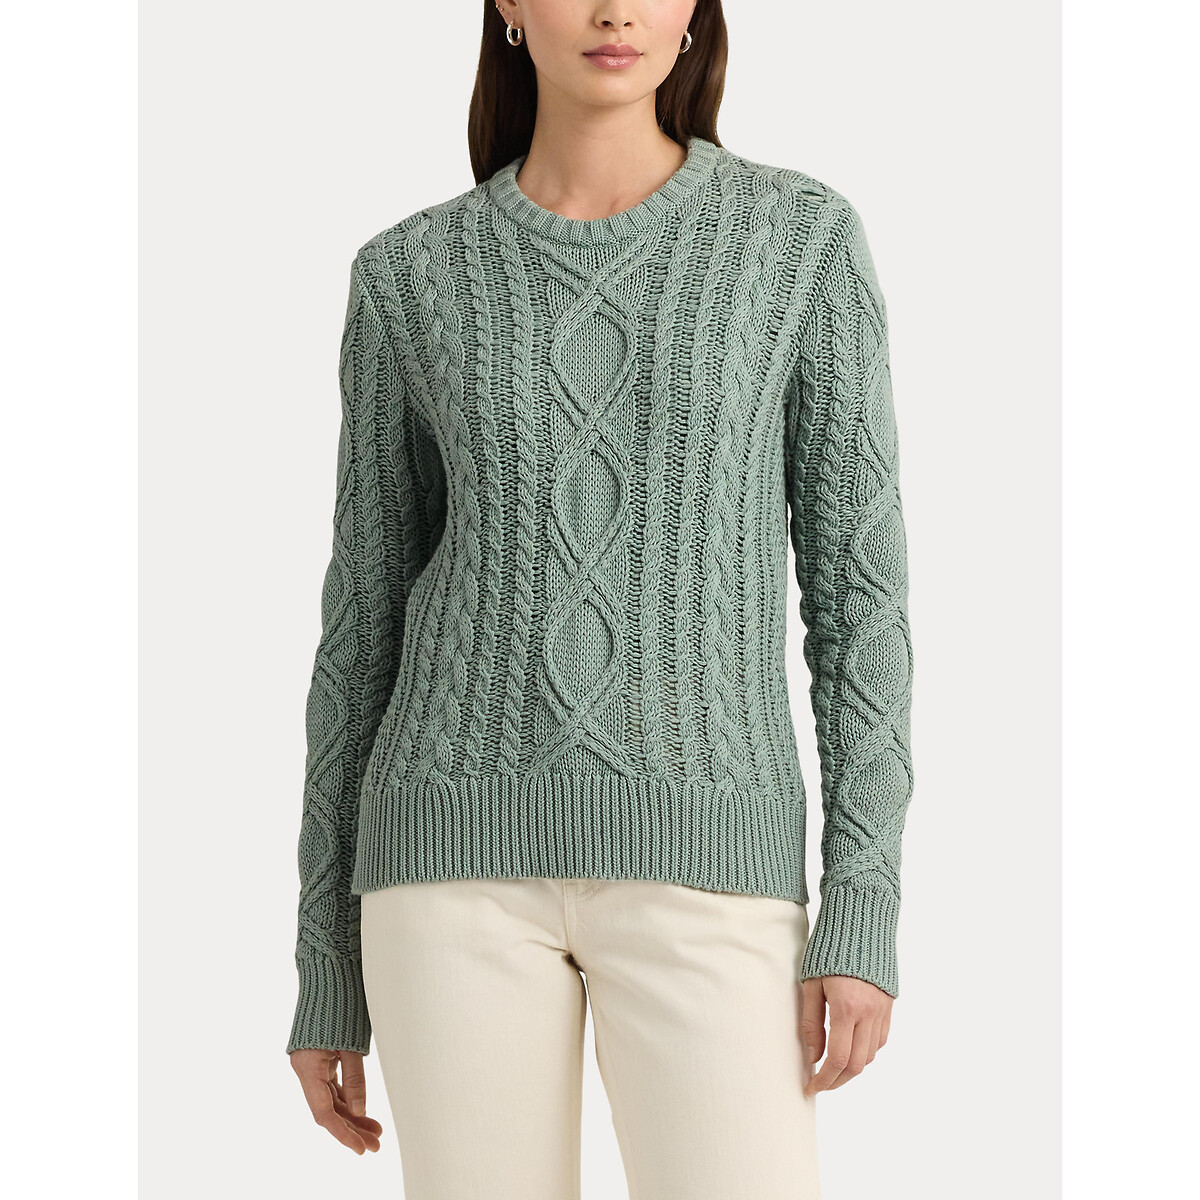 Пуловер с витым узором и круглым вырезом из хлопкового трикотажа HILVAITE XL зеленый пуловер с высоким воротником из трикотажа с витым узором l бежевый